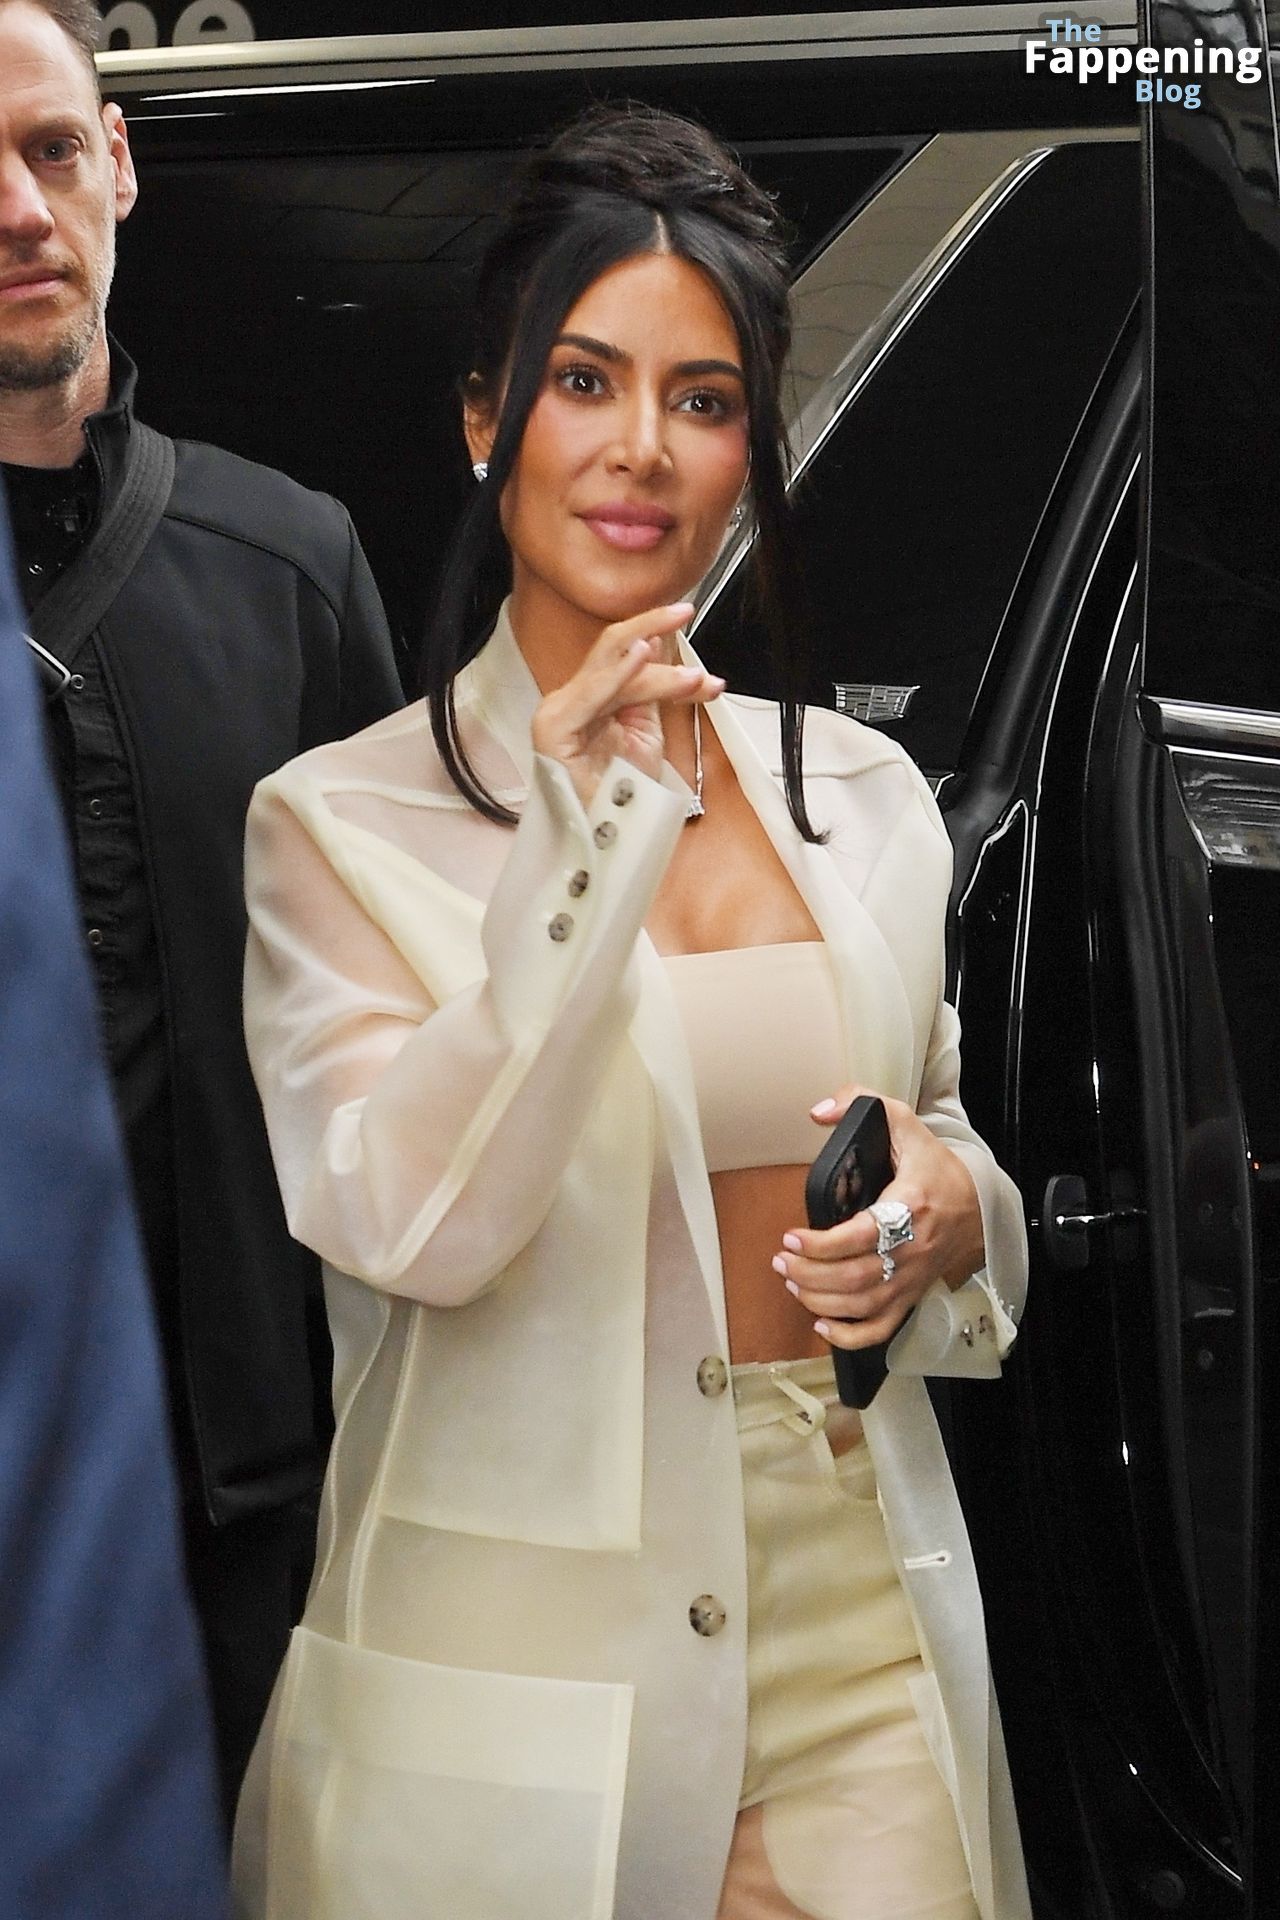 Kim-Kardashian-Sexy-The-Fappening-Blog-26-1.jpg